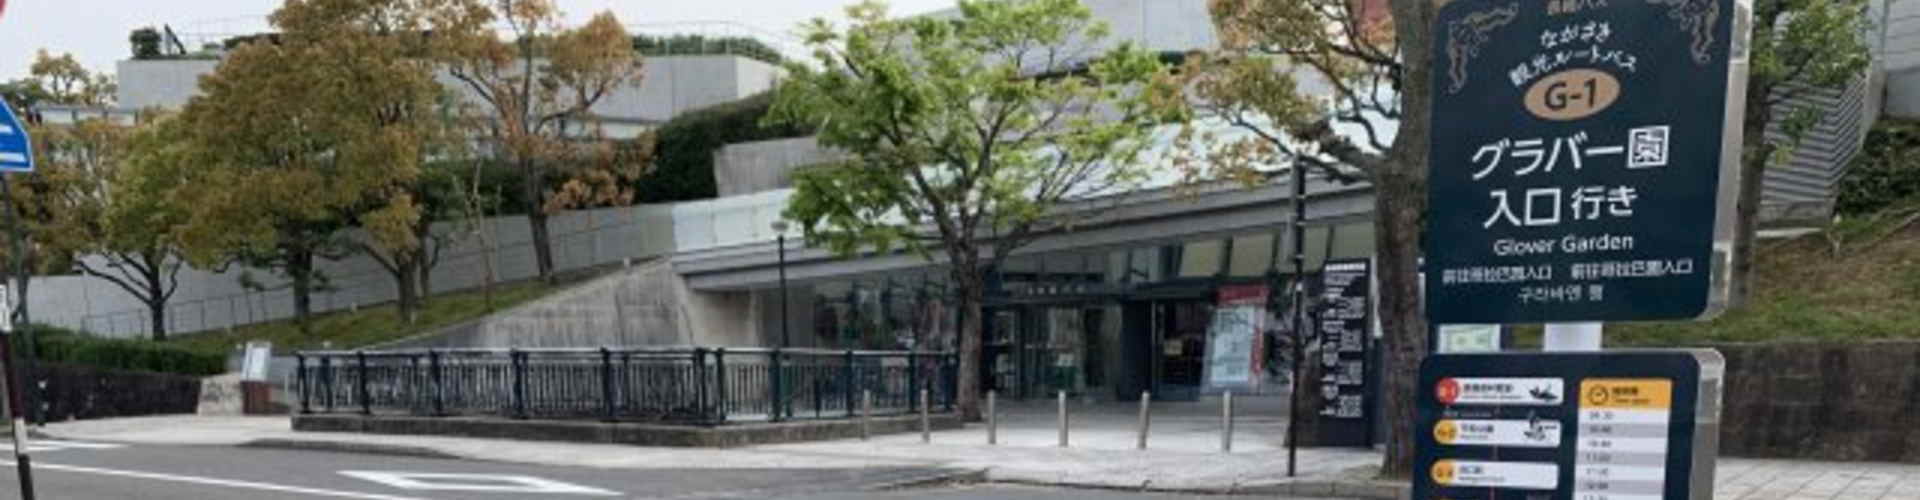 【長崎バス】長崎原爆資料館入口発着路線バスの運行が開始されました。